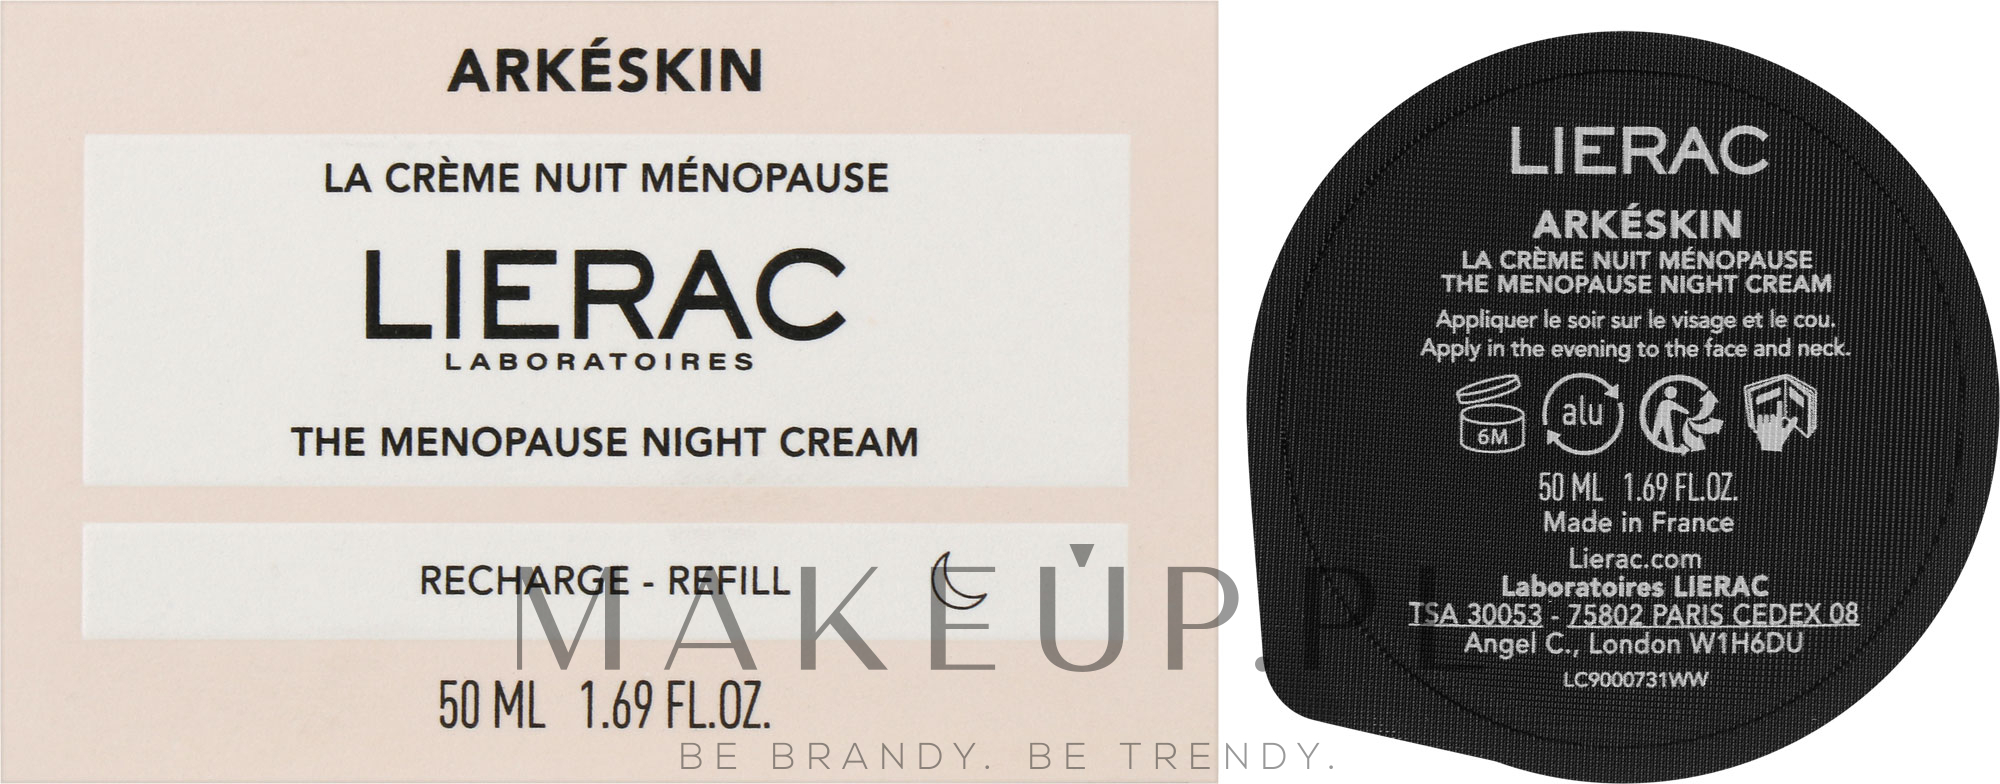 Krem do twarzy na noc - Lierac Arkeskin The Menopause Night Cream Refill (wymienny wkład) — Zdjęcie 50 ml